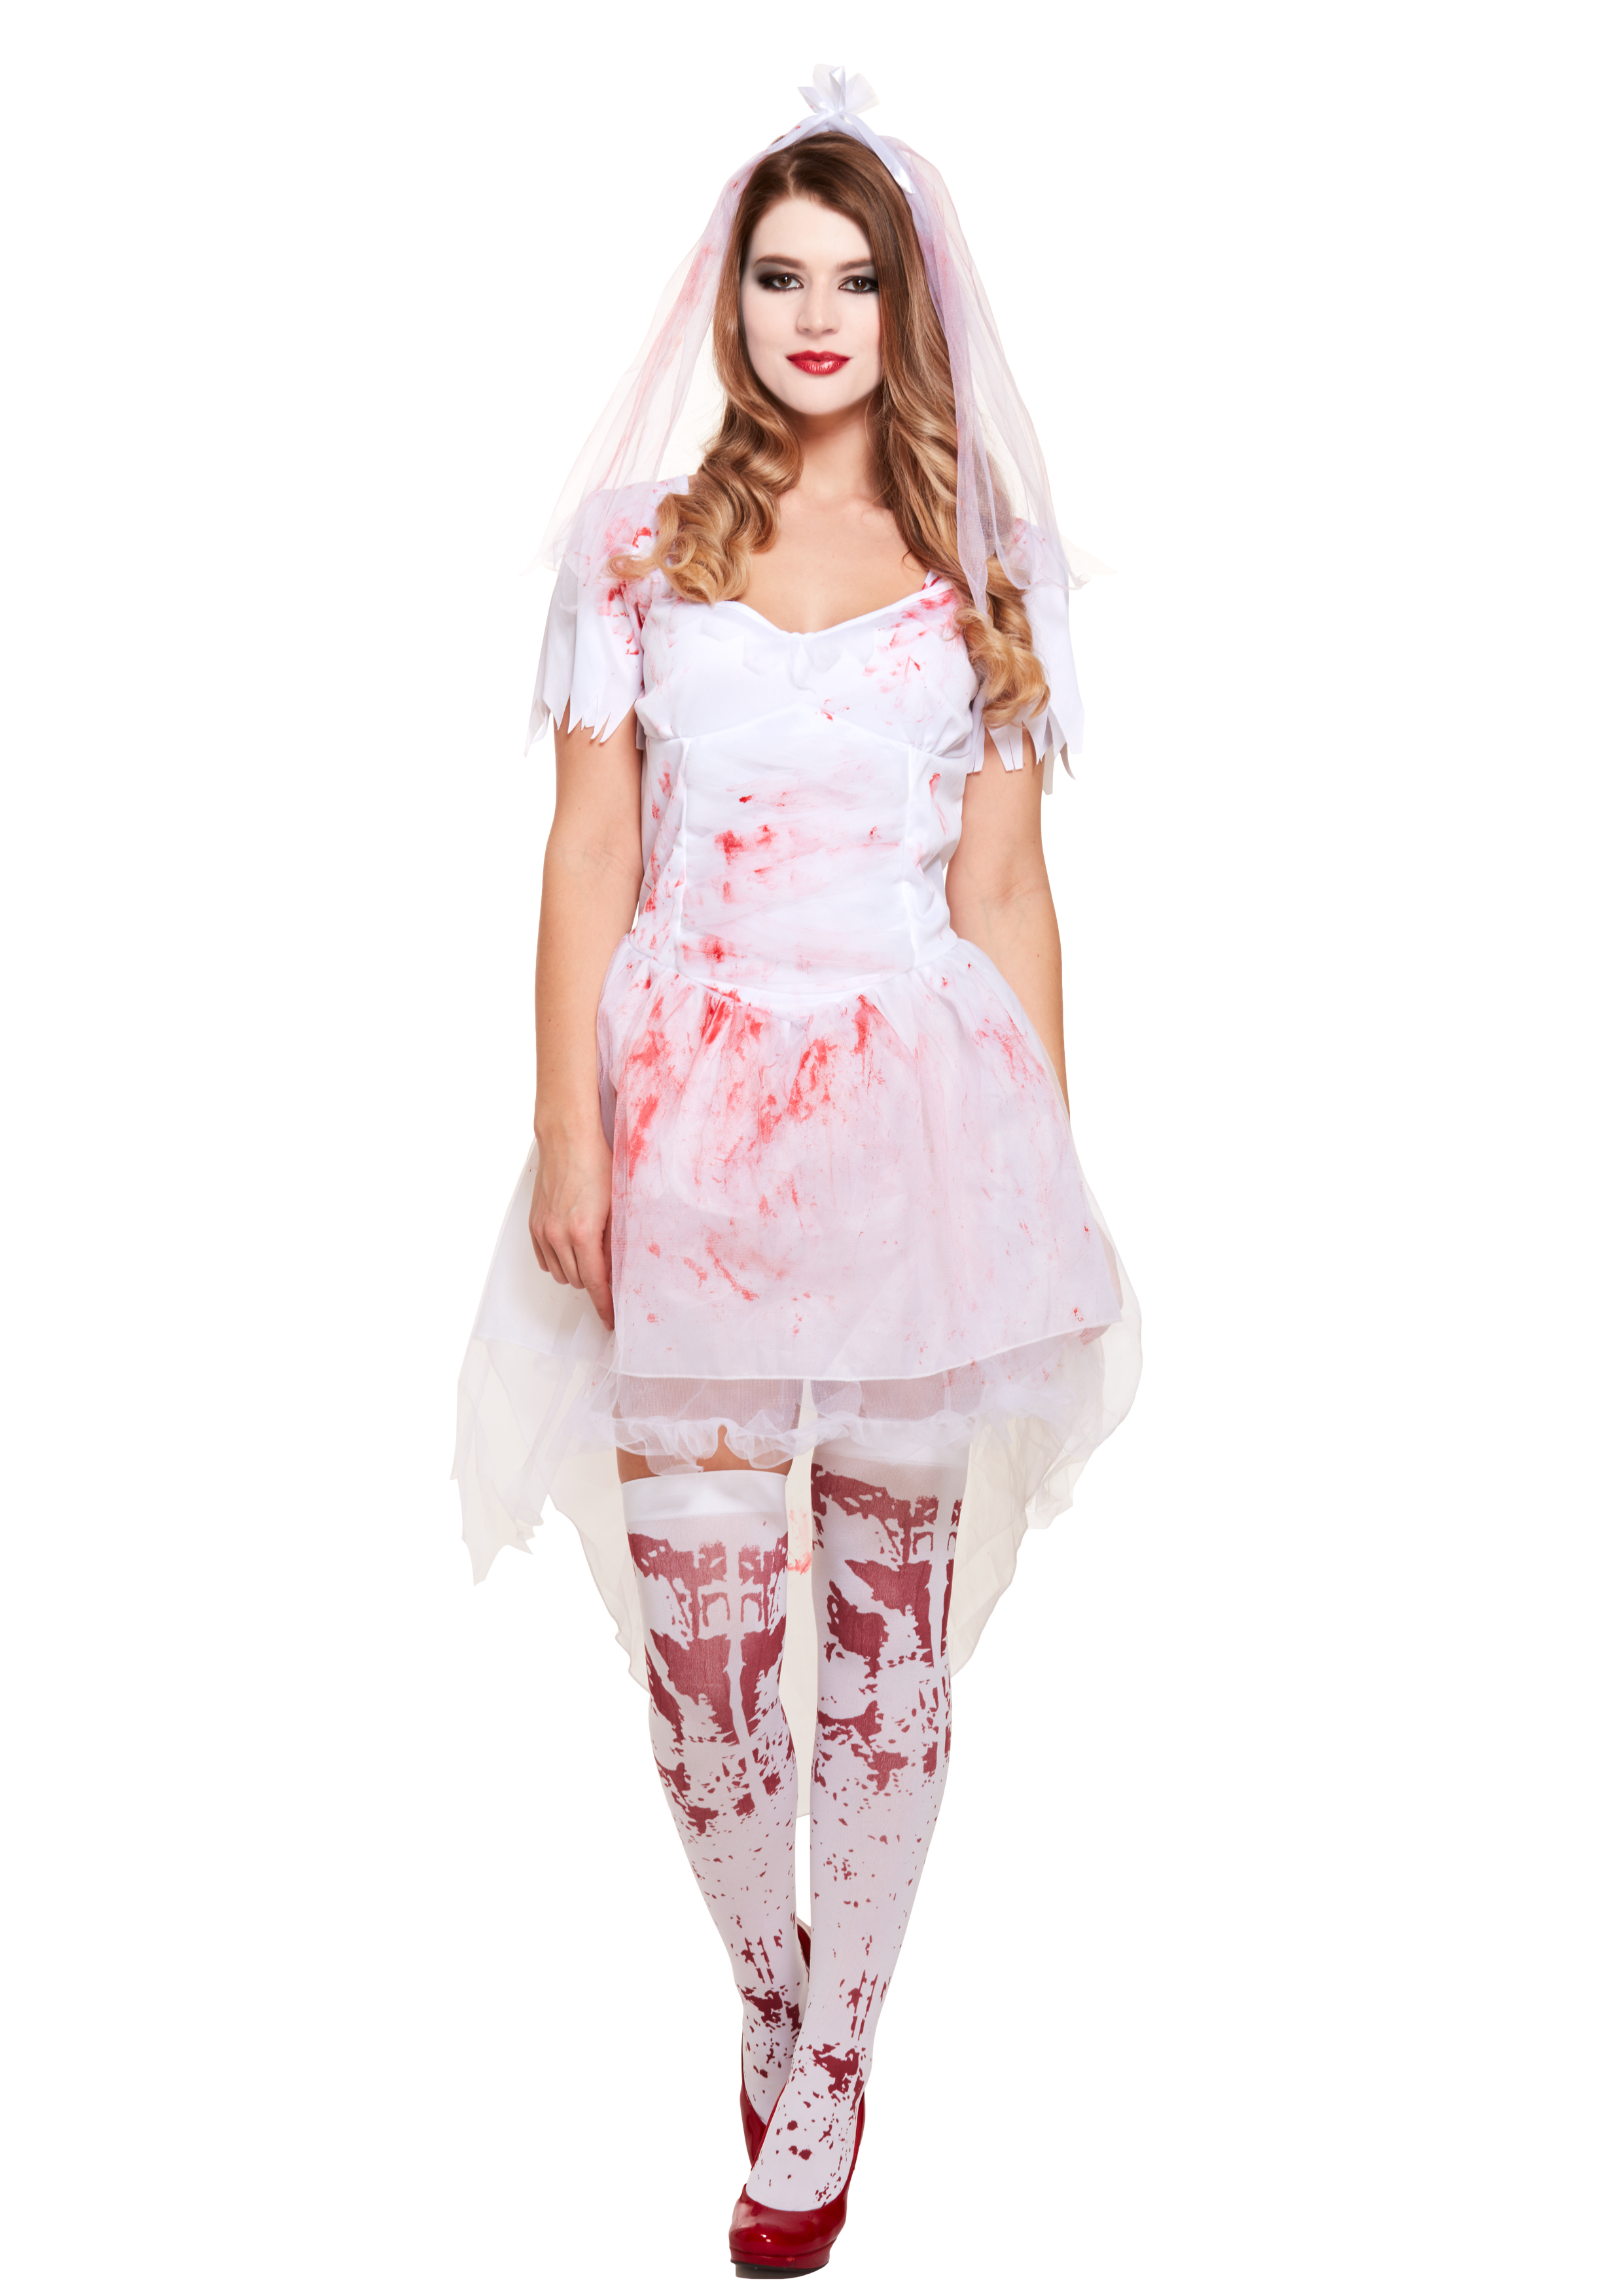 Henbrandt Halloween Fancy Dress Costume - Adult - Sexy Teen Bride